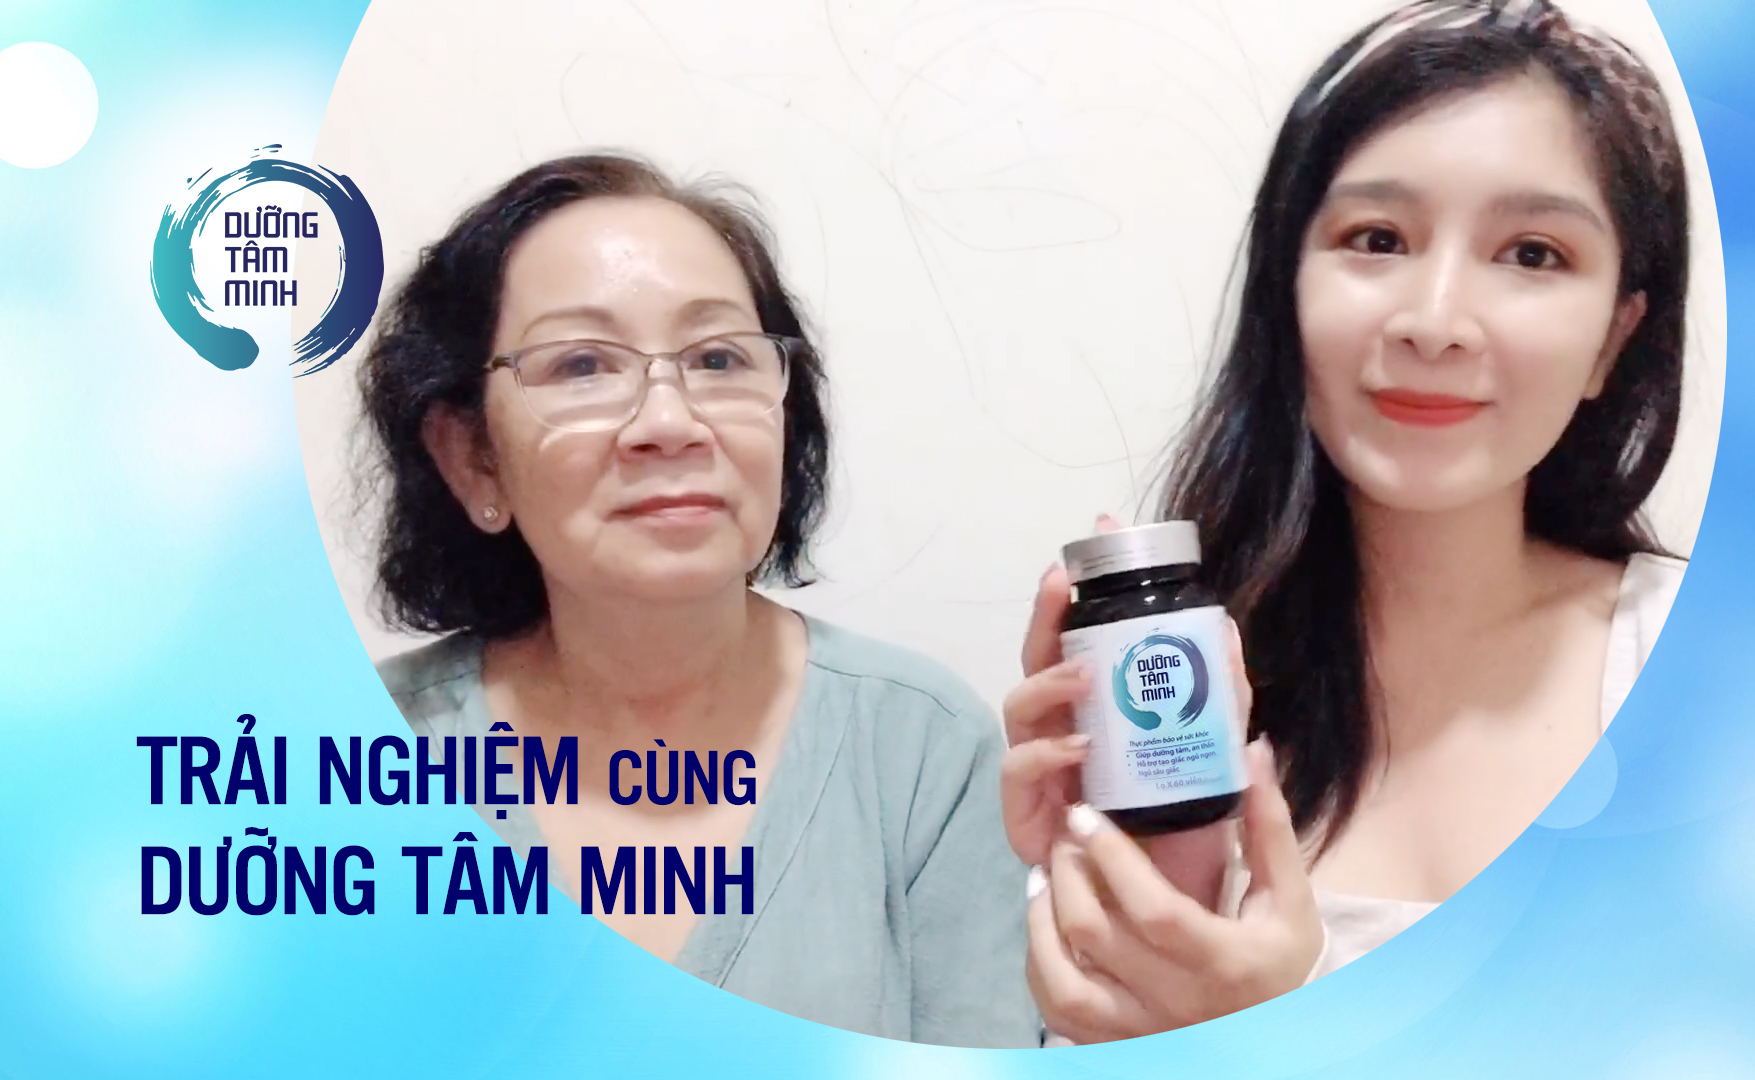 Bác gái tại TP HCM chia sẻ về bệnh lý rối loạn tiền đình và hiệu quả của sản phẩm Dưỡng Tâm Minh